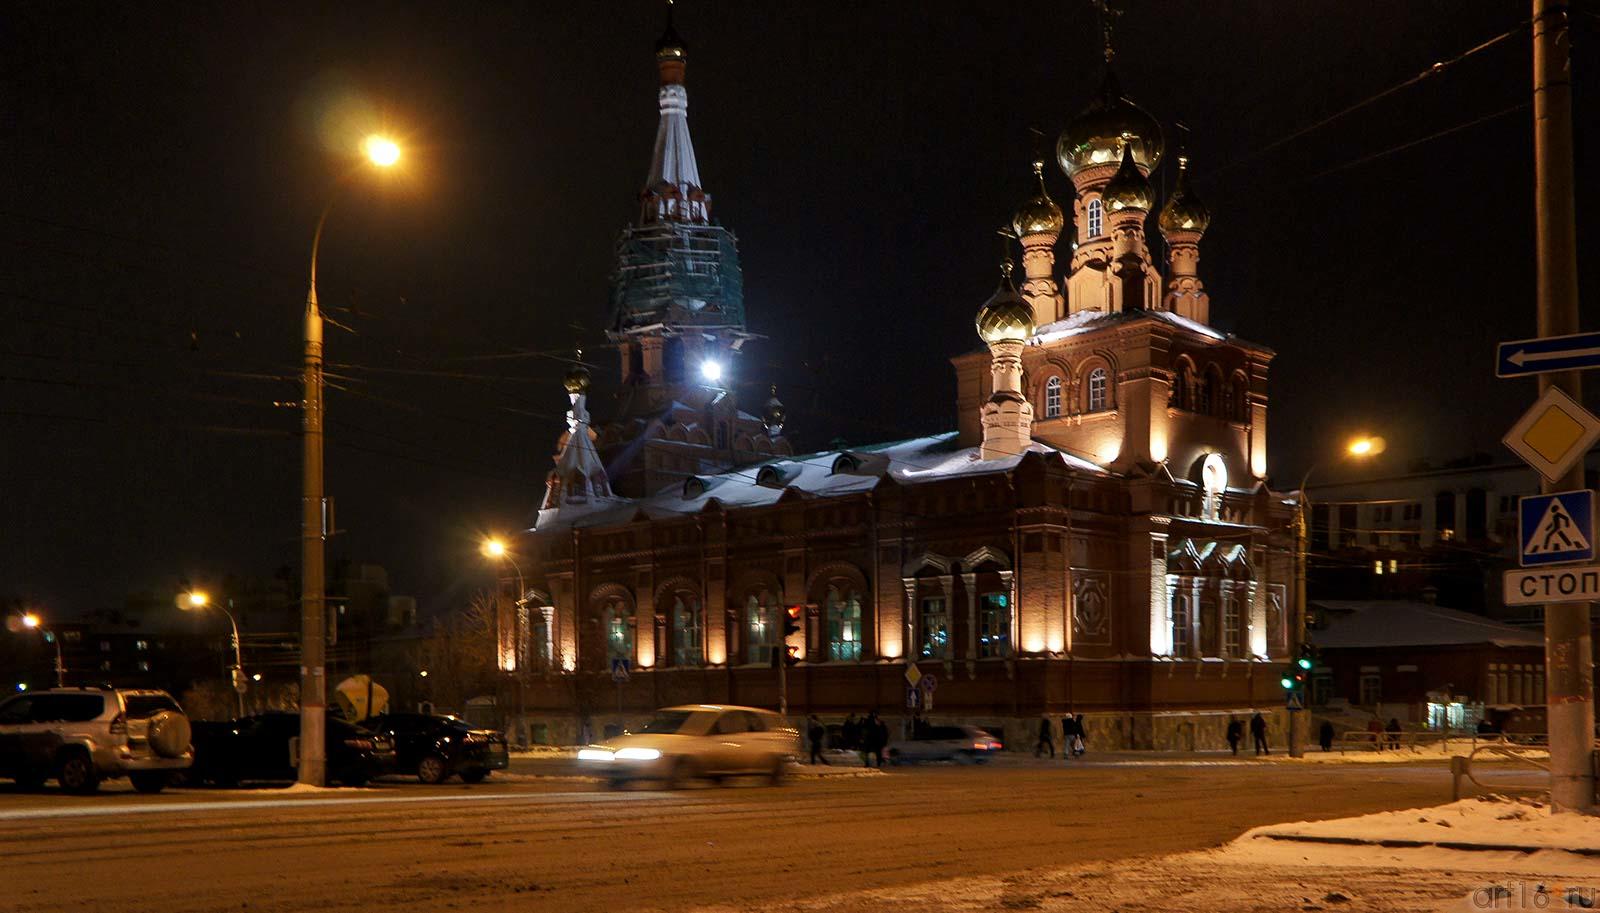 Пермь ночью. 12 января 2012 г.Вознесенско-Феодосиевская церковь (1902)::Прогулка по Перми